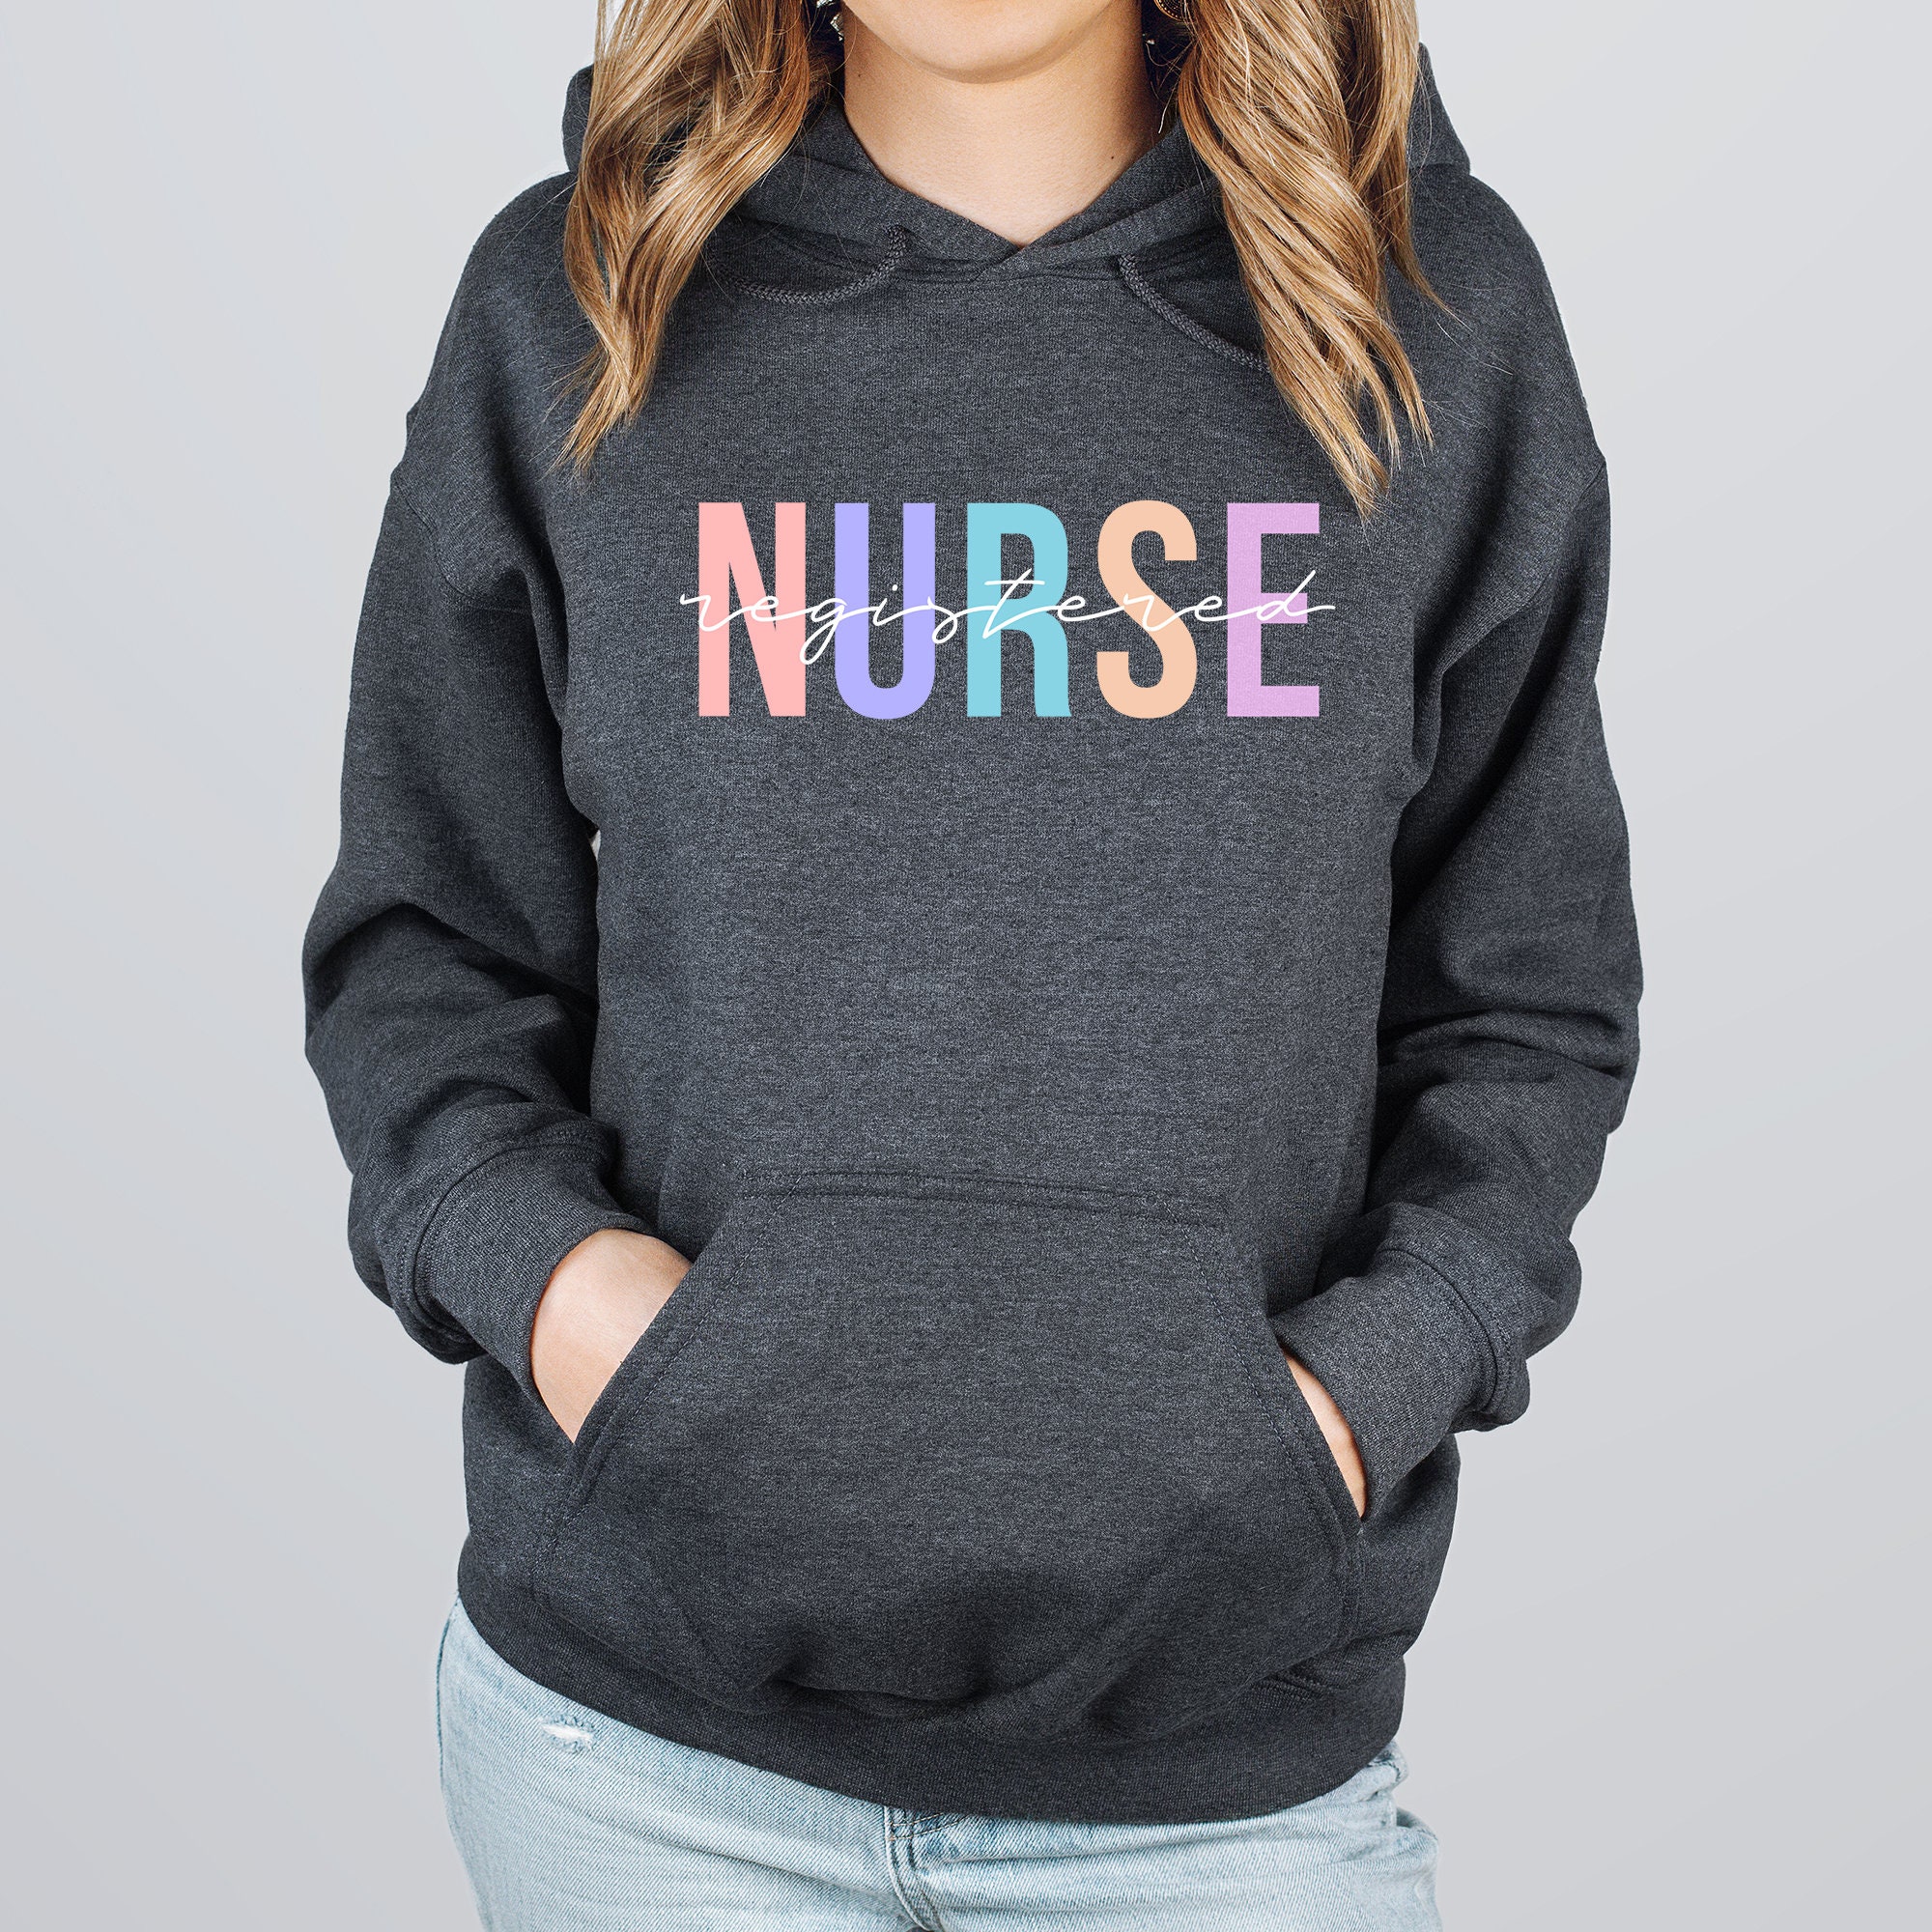 Registered Nurse Sweatshirt CNA Nurse Sweater Nursing - Etsy UK